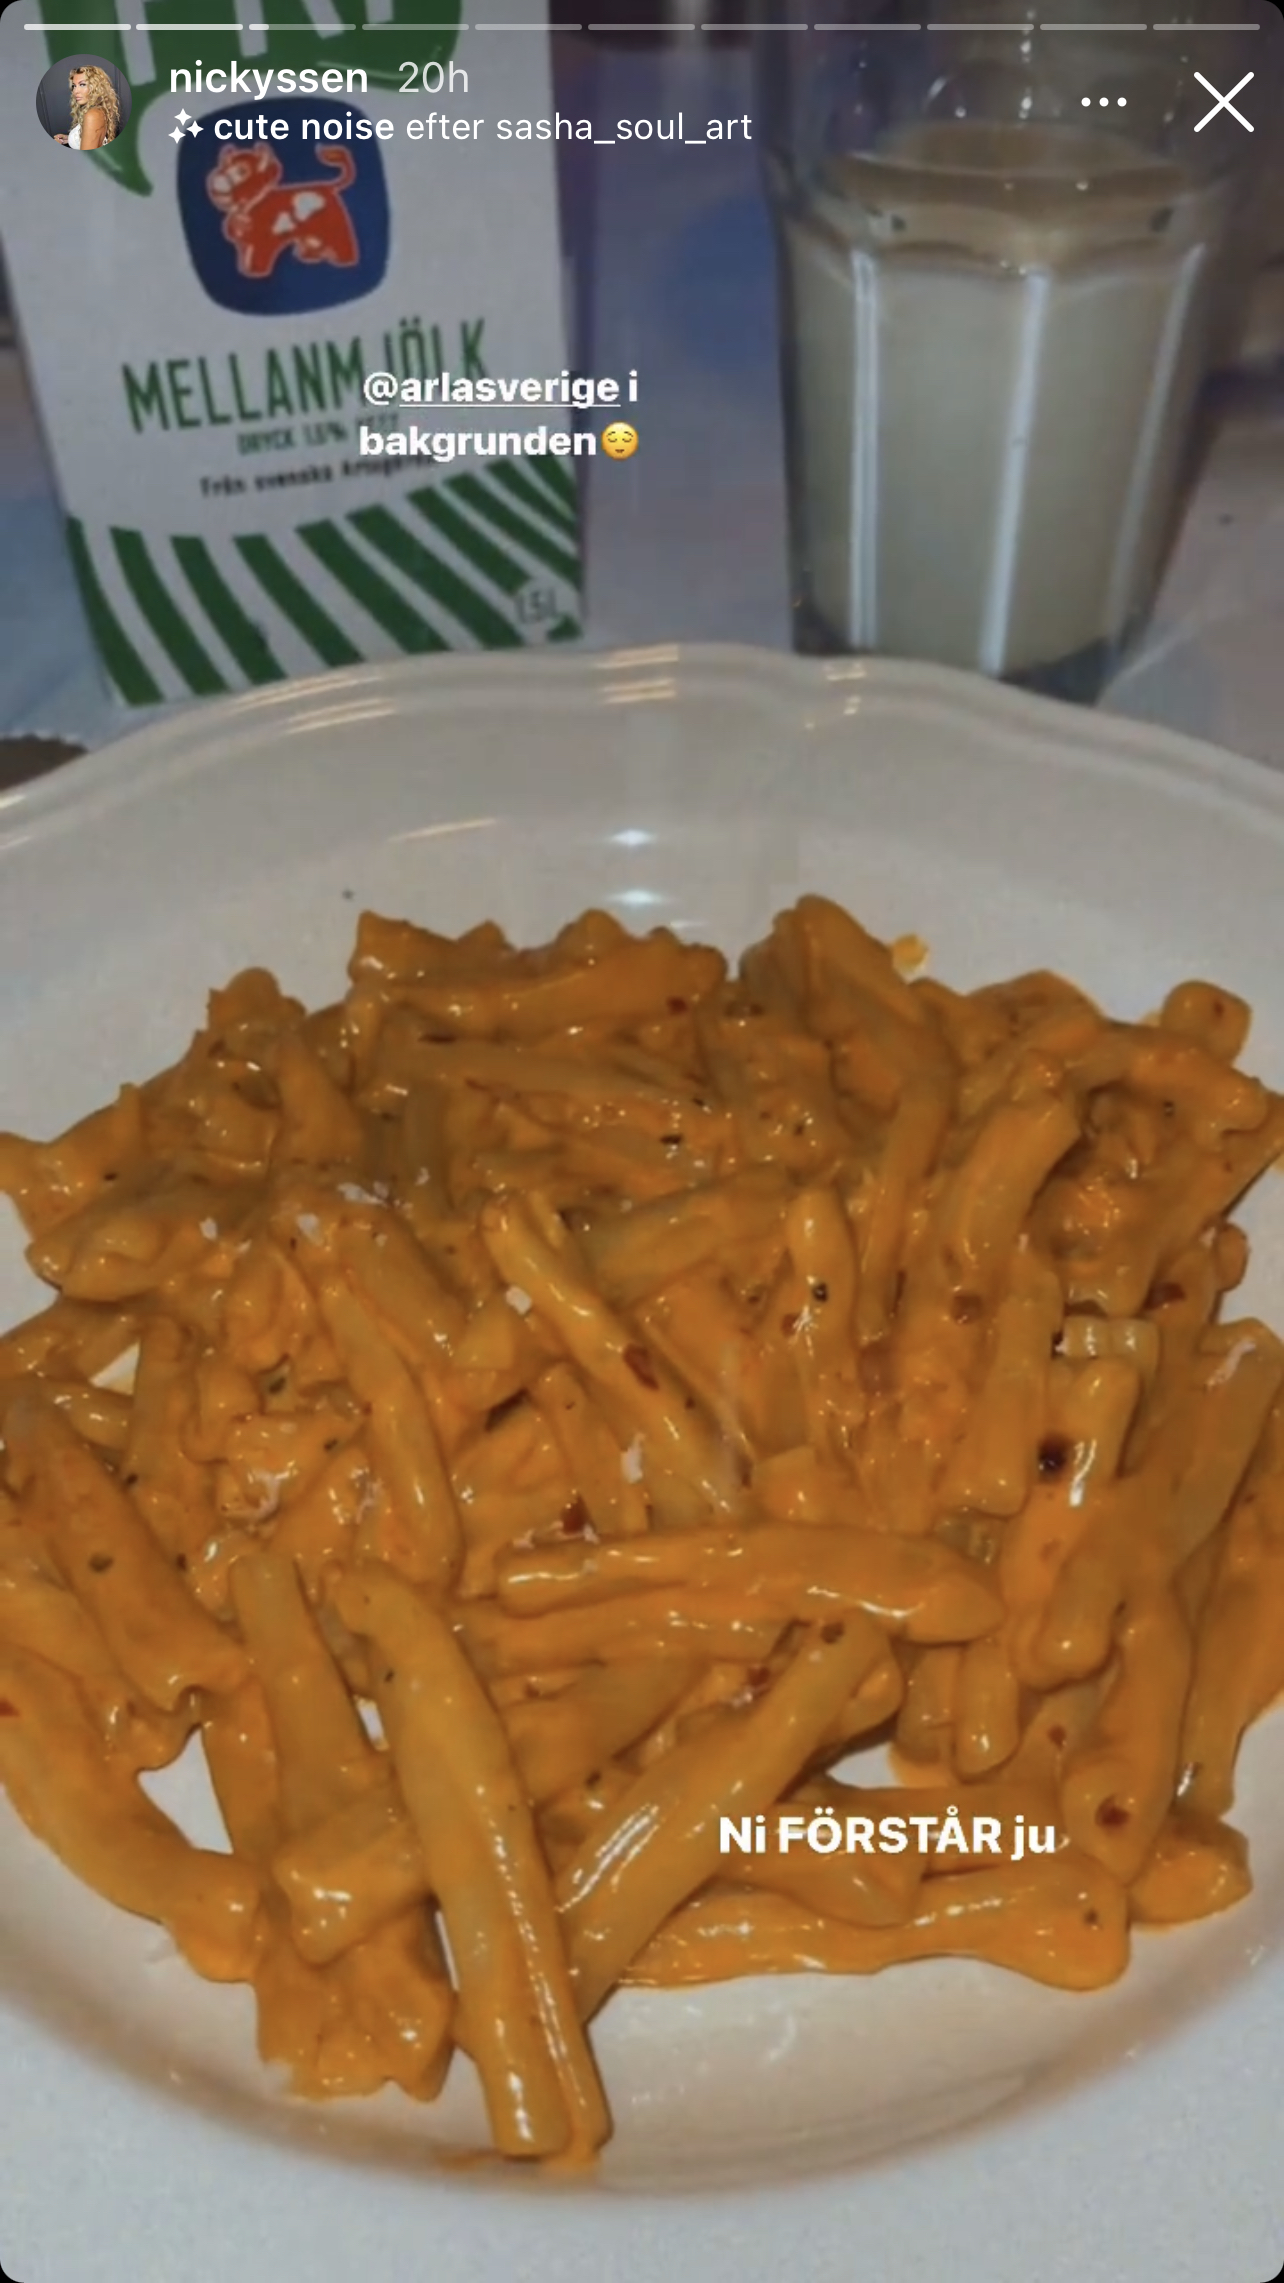 En bild på orange pasta med texten "Ni förstår ju" från @nickyssen